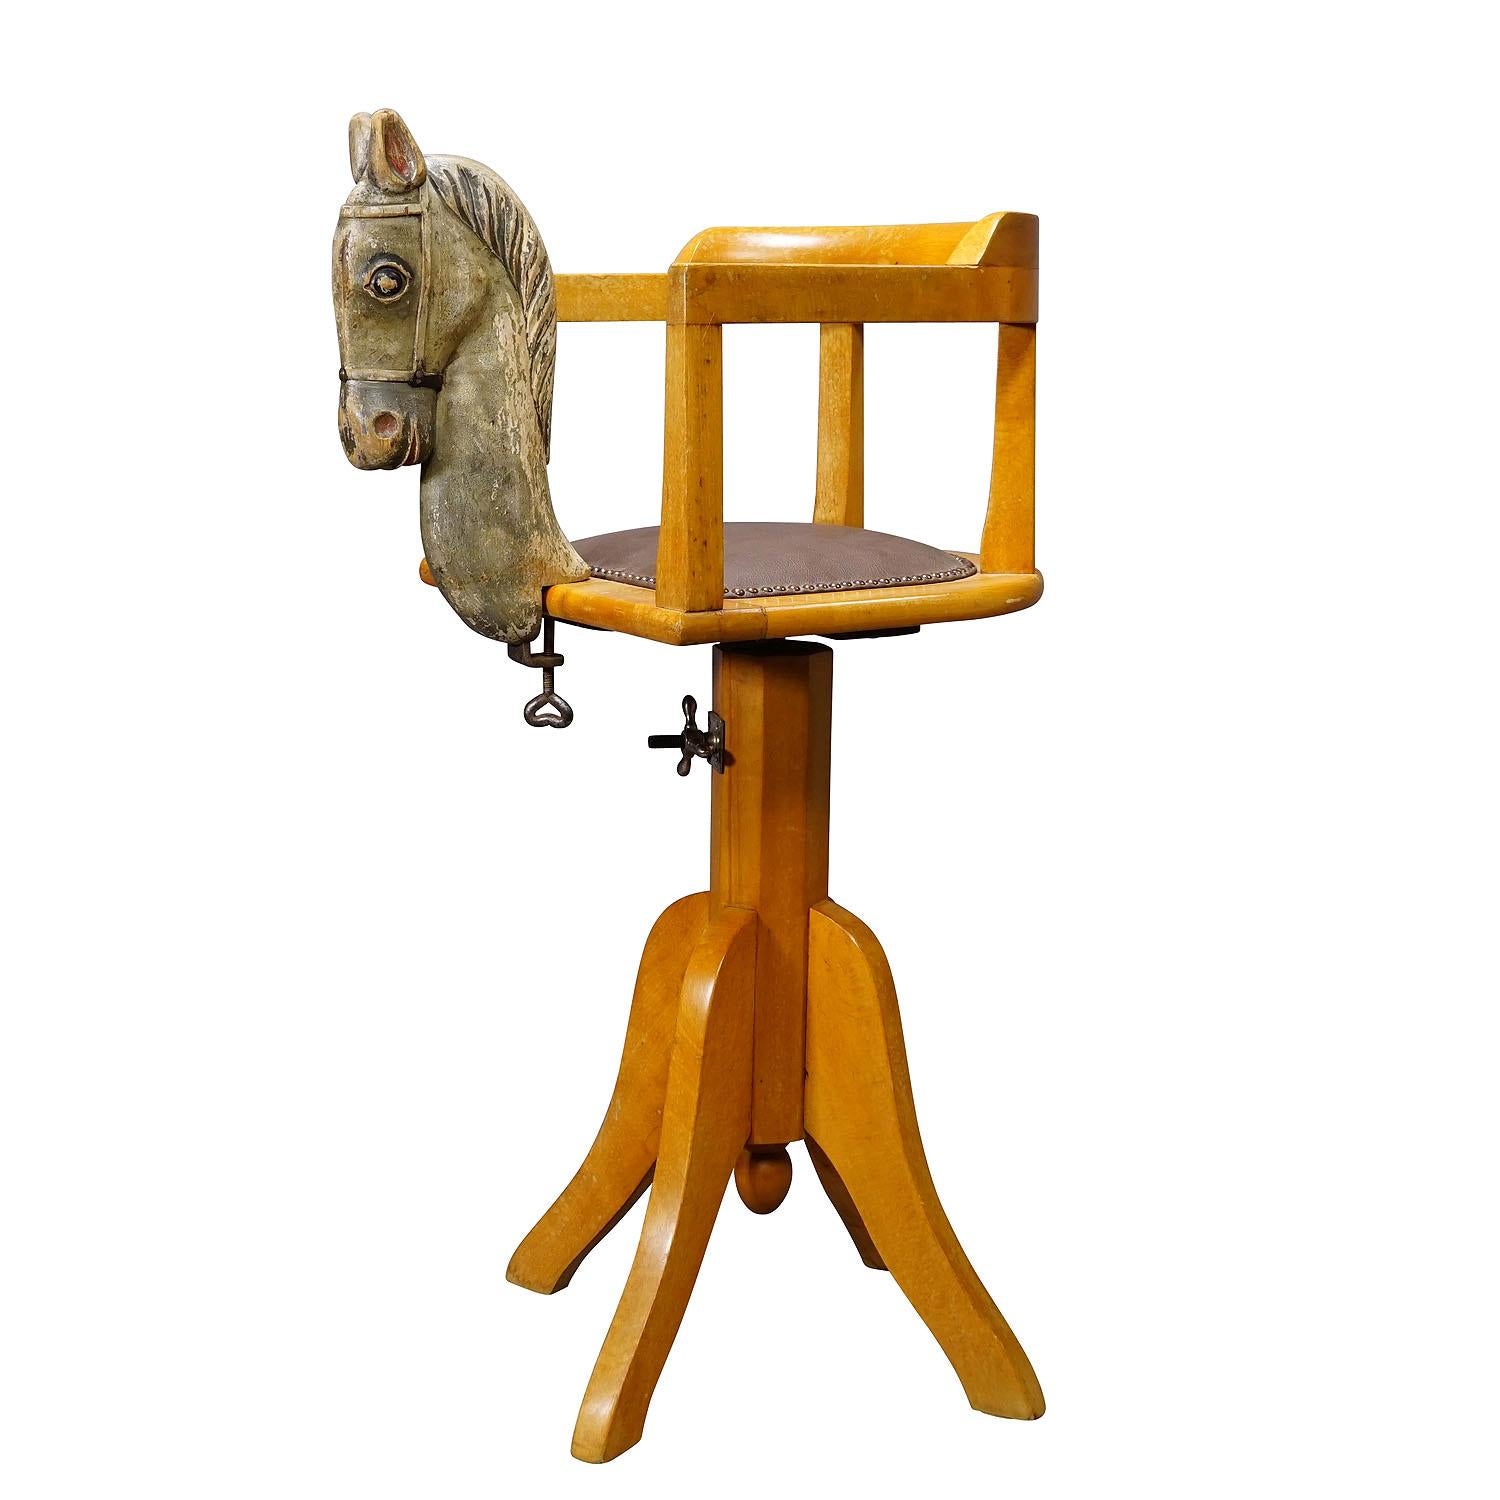 Vintage Barber-Stuhl für Kinder, Deutschland, ca. 1950er Jahre

Ein alter Friseurstuhl für Kinder. Mit drehbarer Höhenverstellung und einem hölzernen Pferdekopf, der an der Vorderseite des Ständers befestigt ist.  den Sitz. Guter unrestaurierter